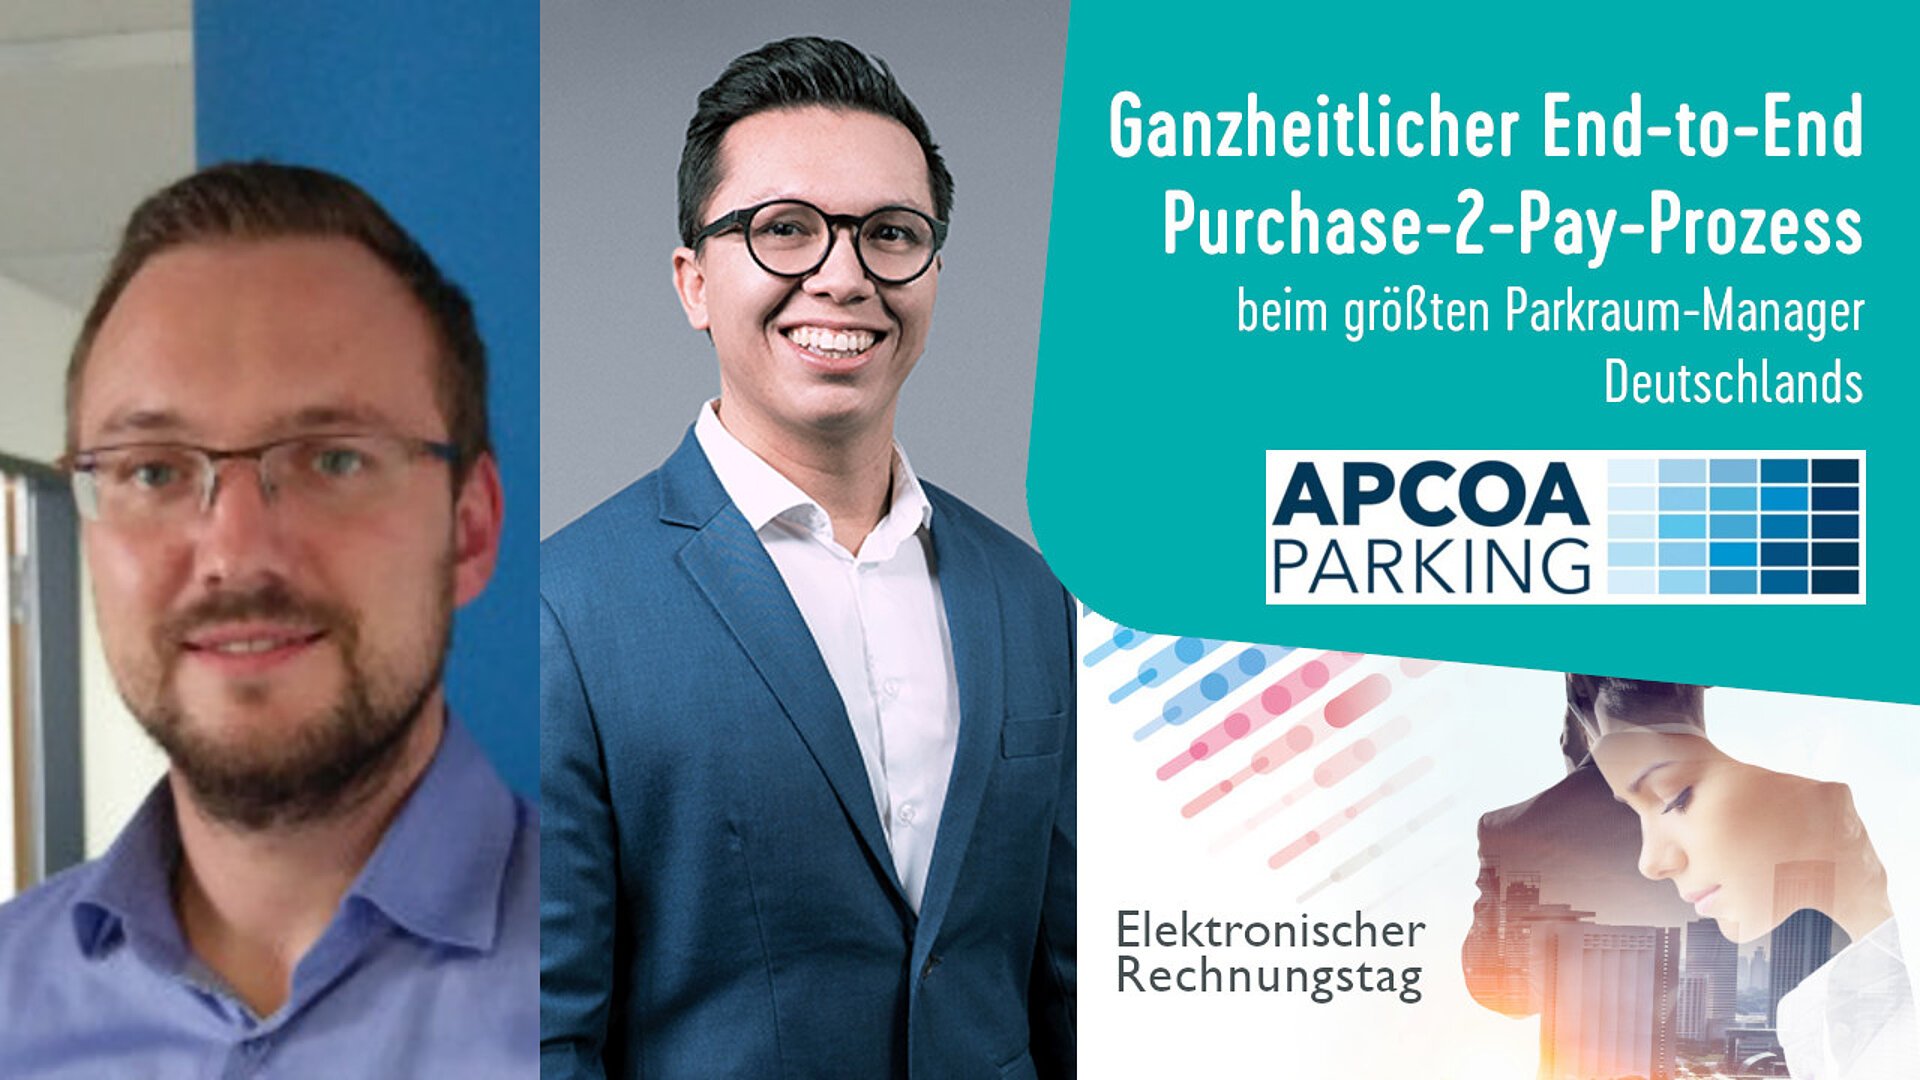 Ganzheitlicher End-to-End Purchase-2-Pay-Prozess beim größten Parkraum-Manager Deutschlands